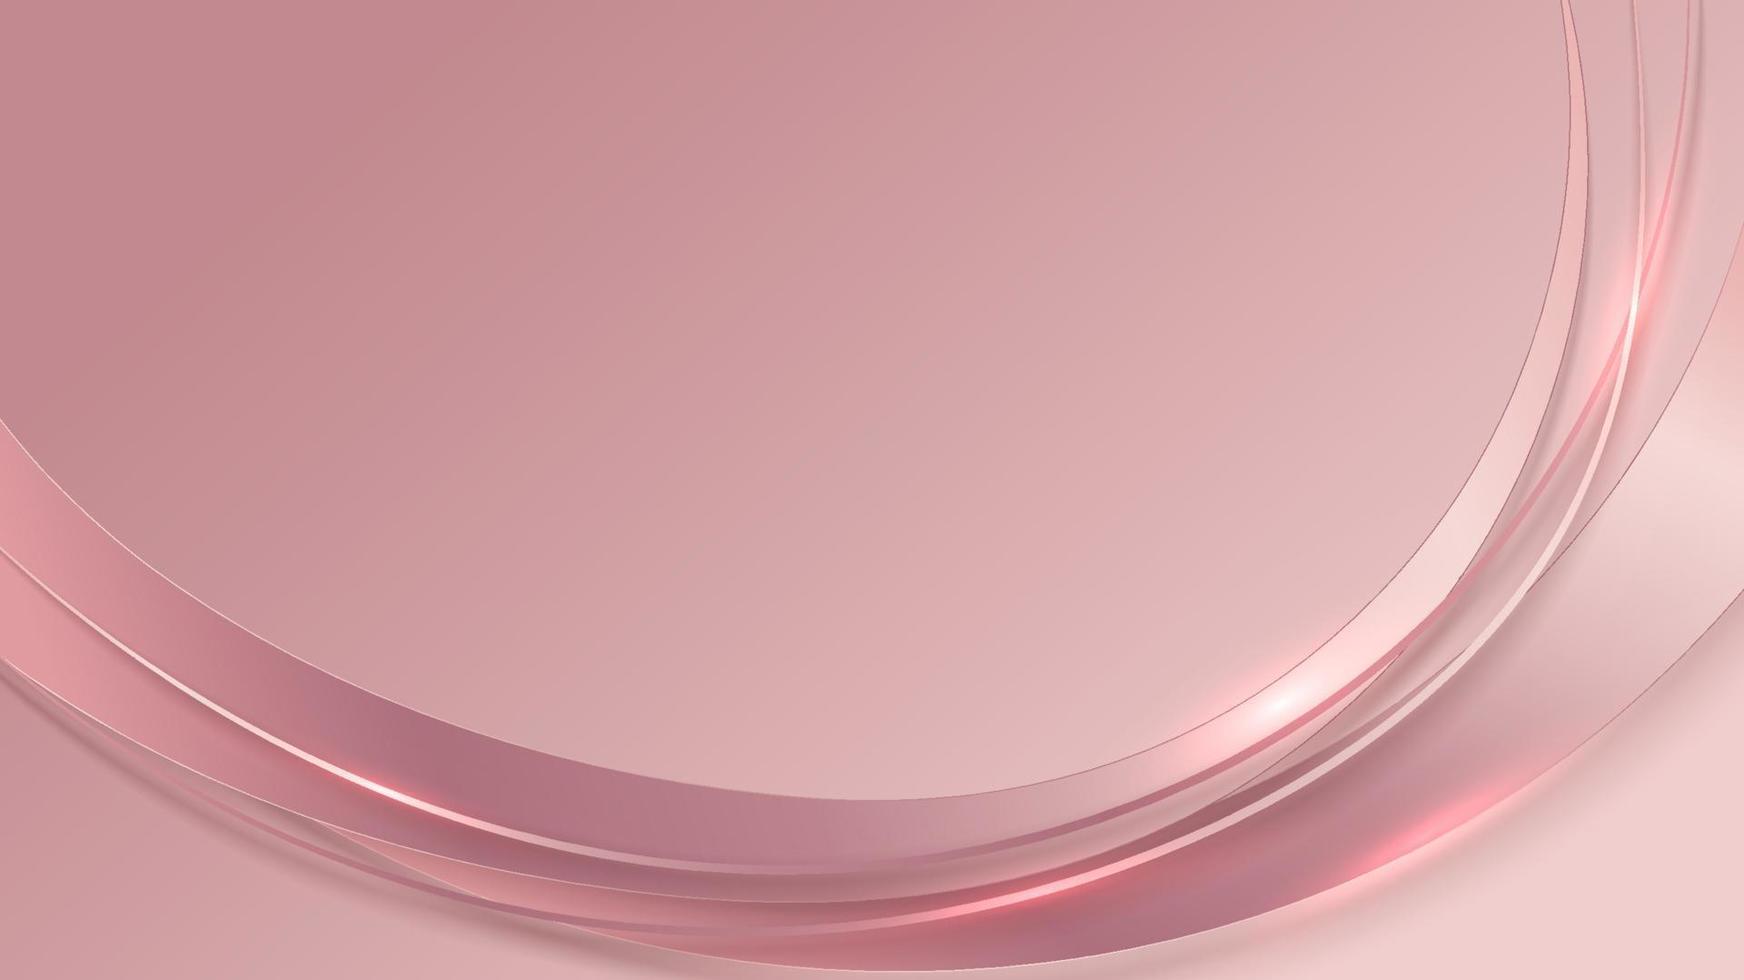 Abstrakter Luxus-Vorlagenhintergrund 3D-rosa geschwungene Linien formen überlappende Schichten mit Beleuchtung vektor